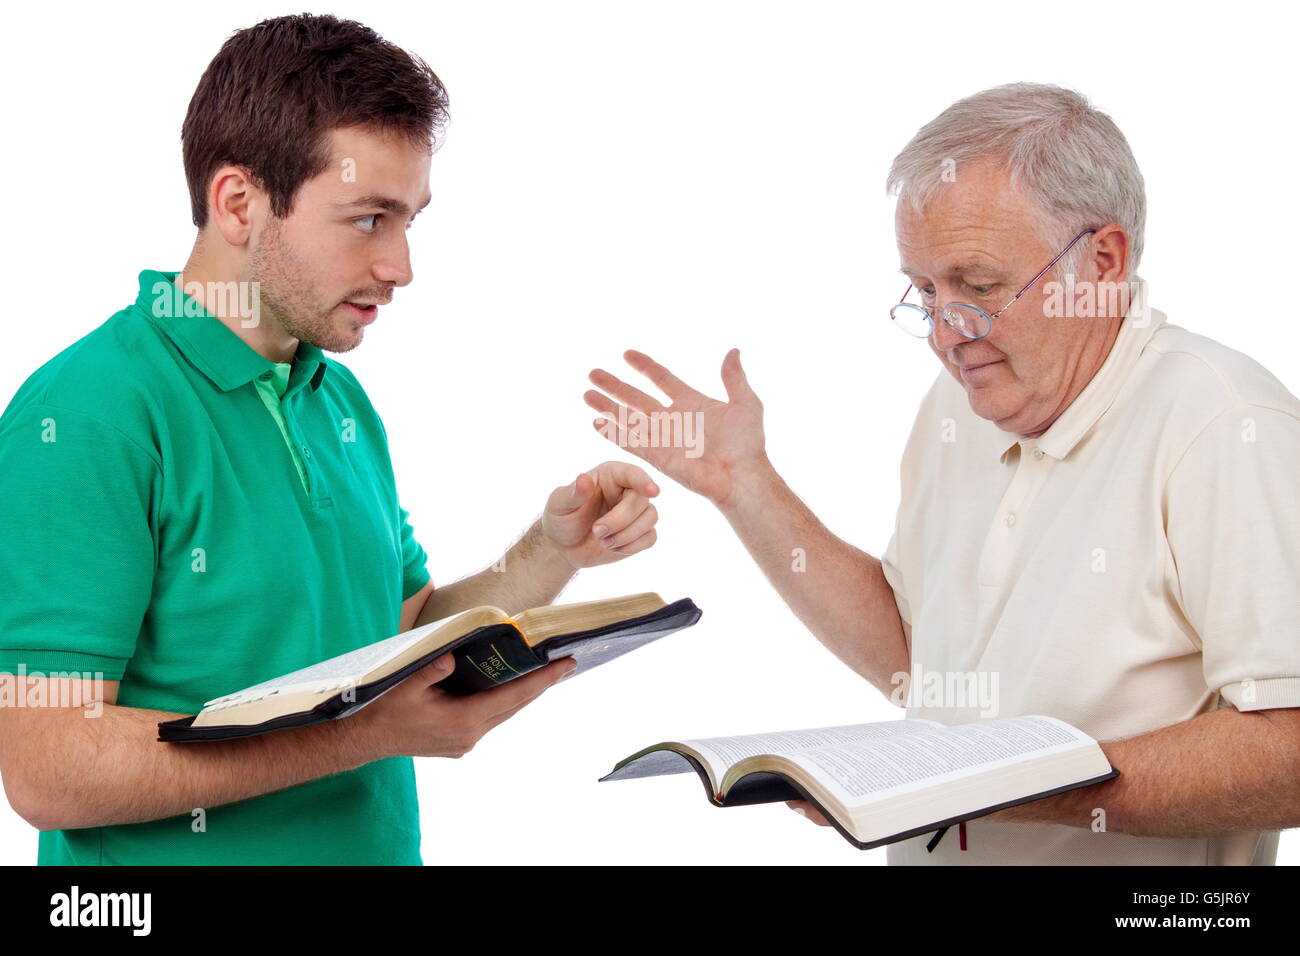 Giovane uomo condividendo le parole di Dio con un uomo vecchio Foto Stock